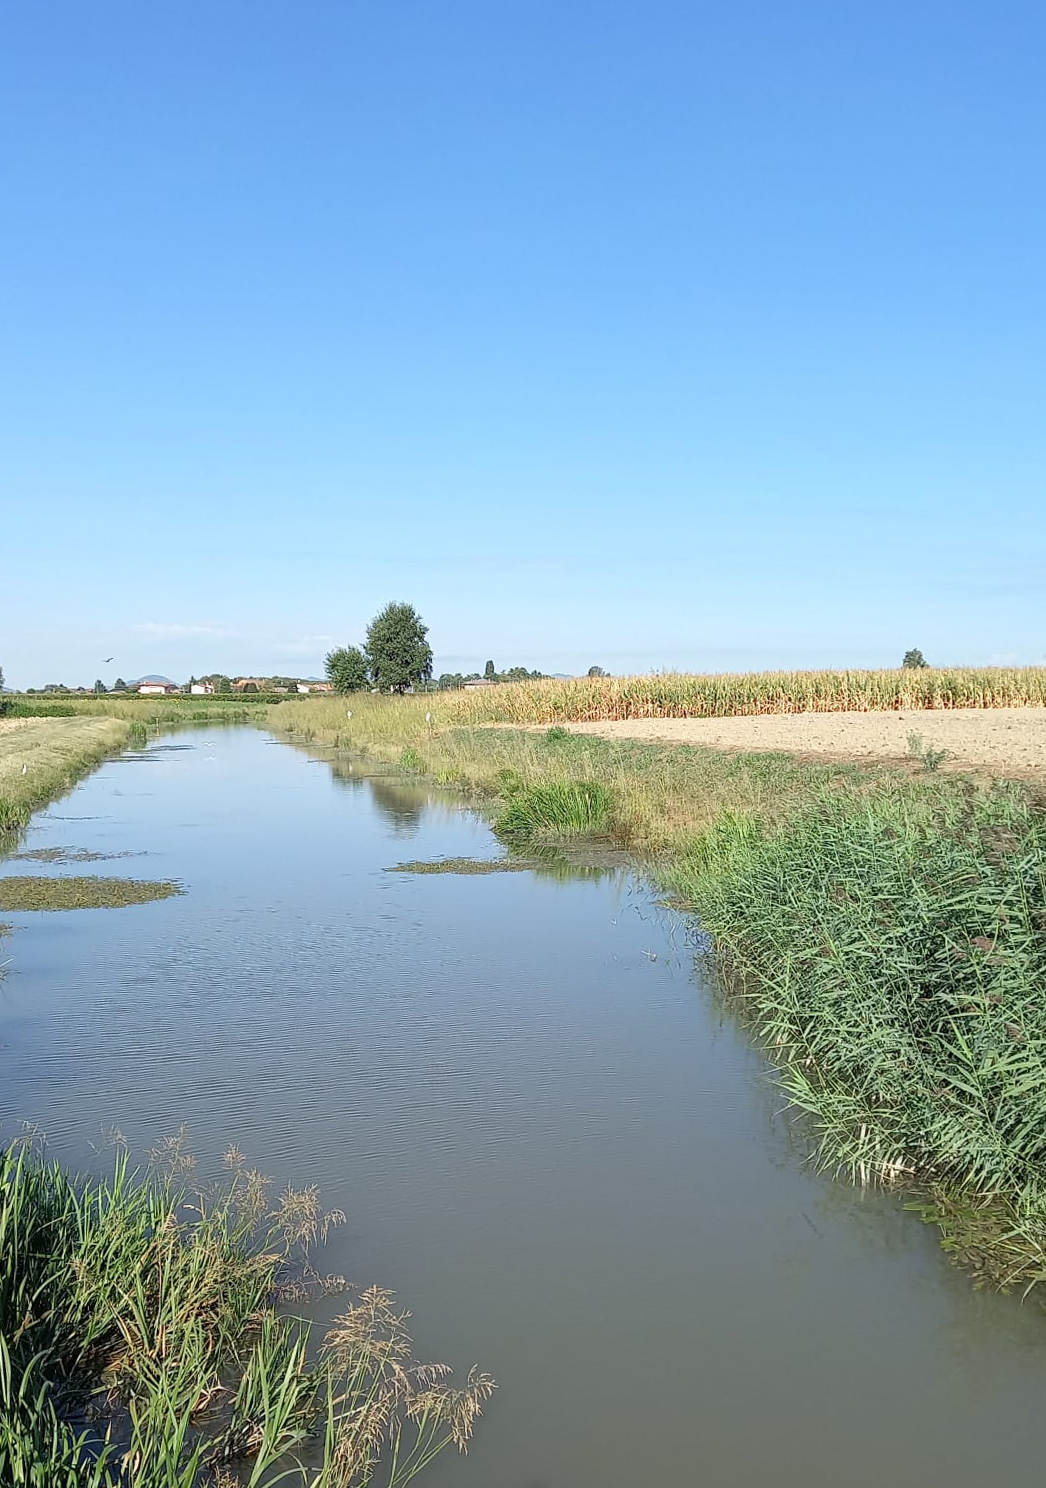 Manutenzione gentile: conclusa la prima fase di formazione 
Il Consorzio Bacchiglione è pronto a dare il via alla gestione ambientale dei corsi d’acqua